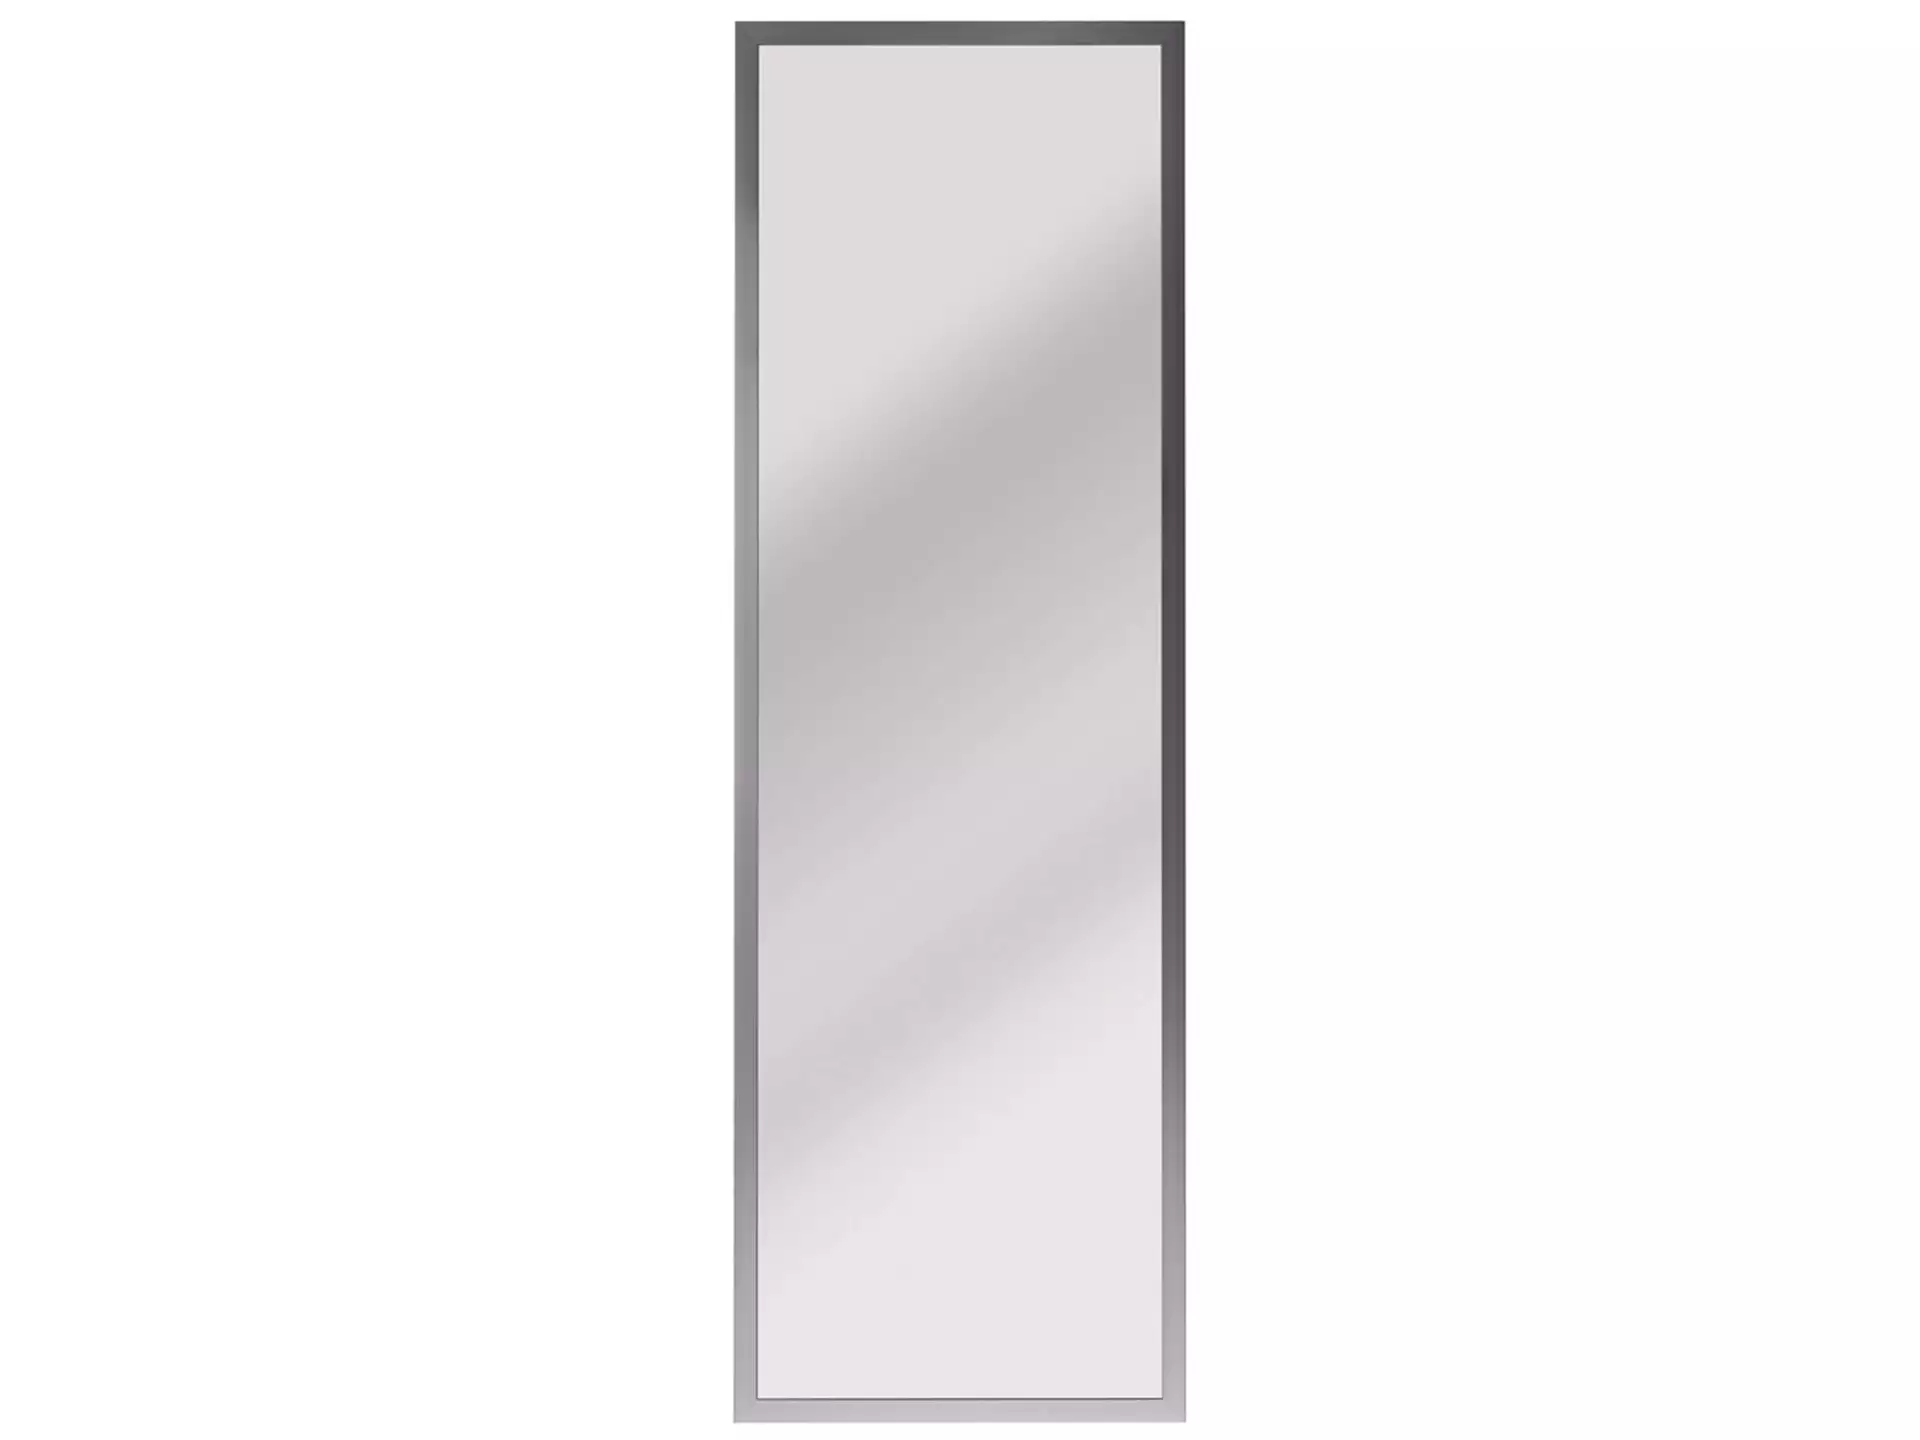 Spiegel Mit Holzrahmen 45 x 140 cm image LAND